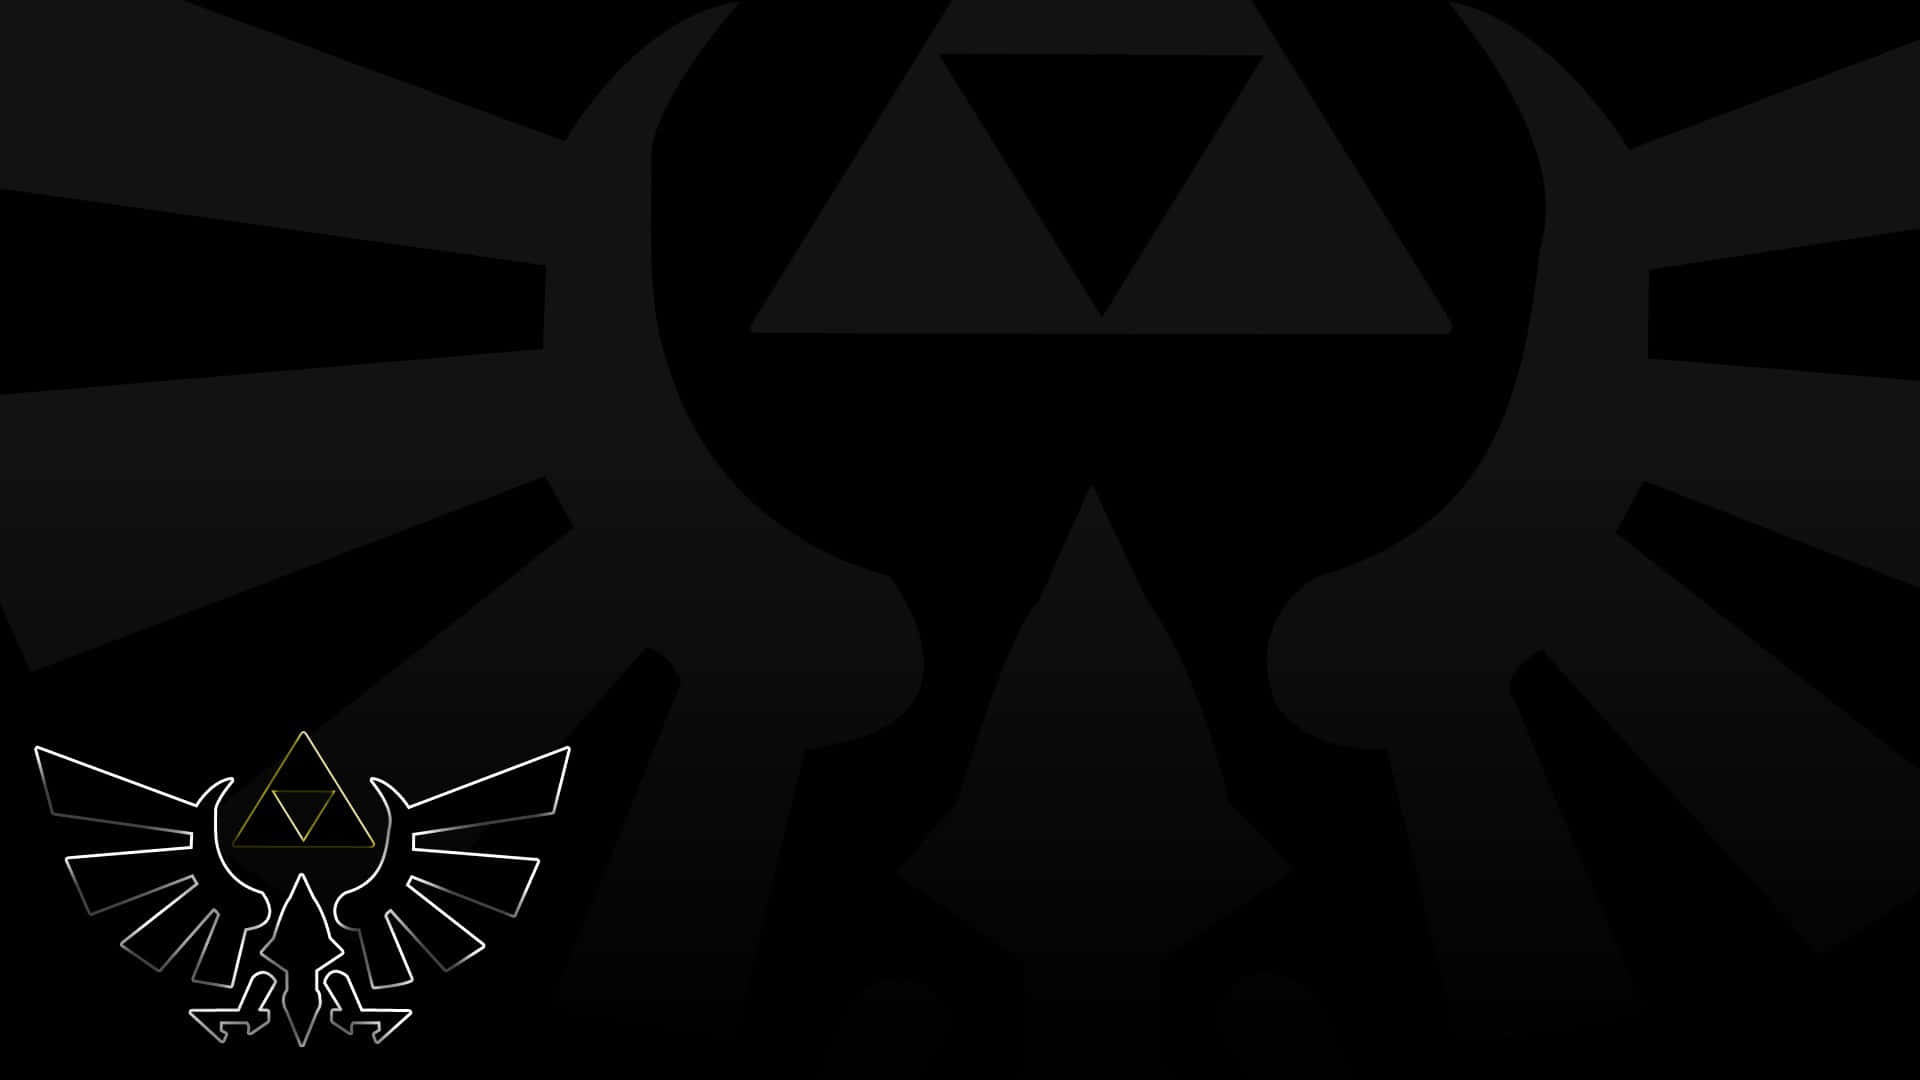 Imagenuna Hermosa Representación Del Triforce De La Leyenda De Zelda. Fondo de pantalla